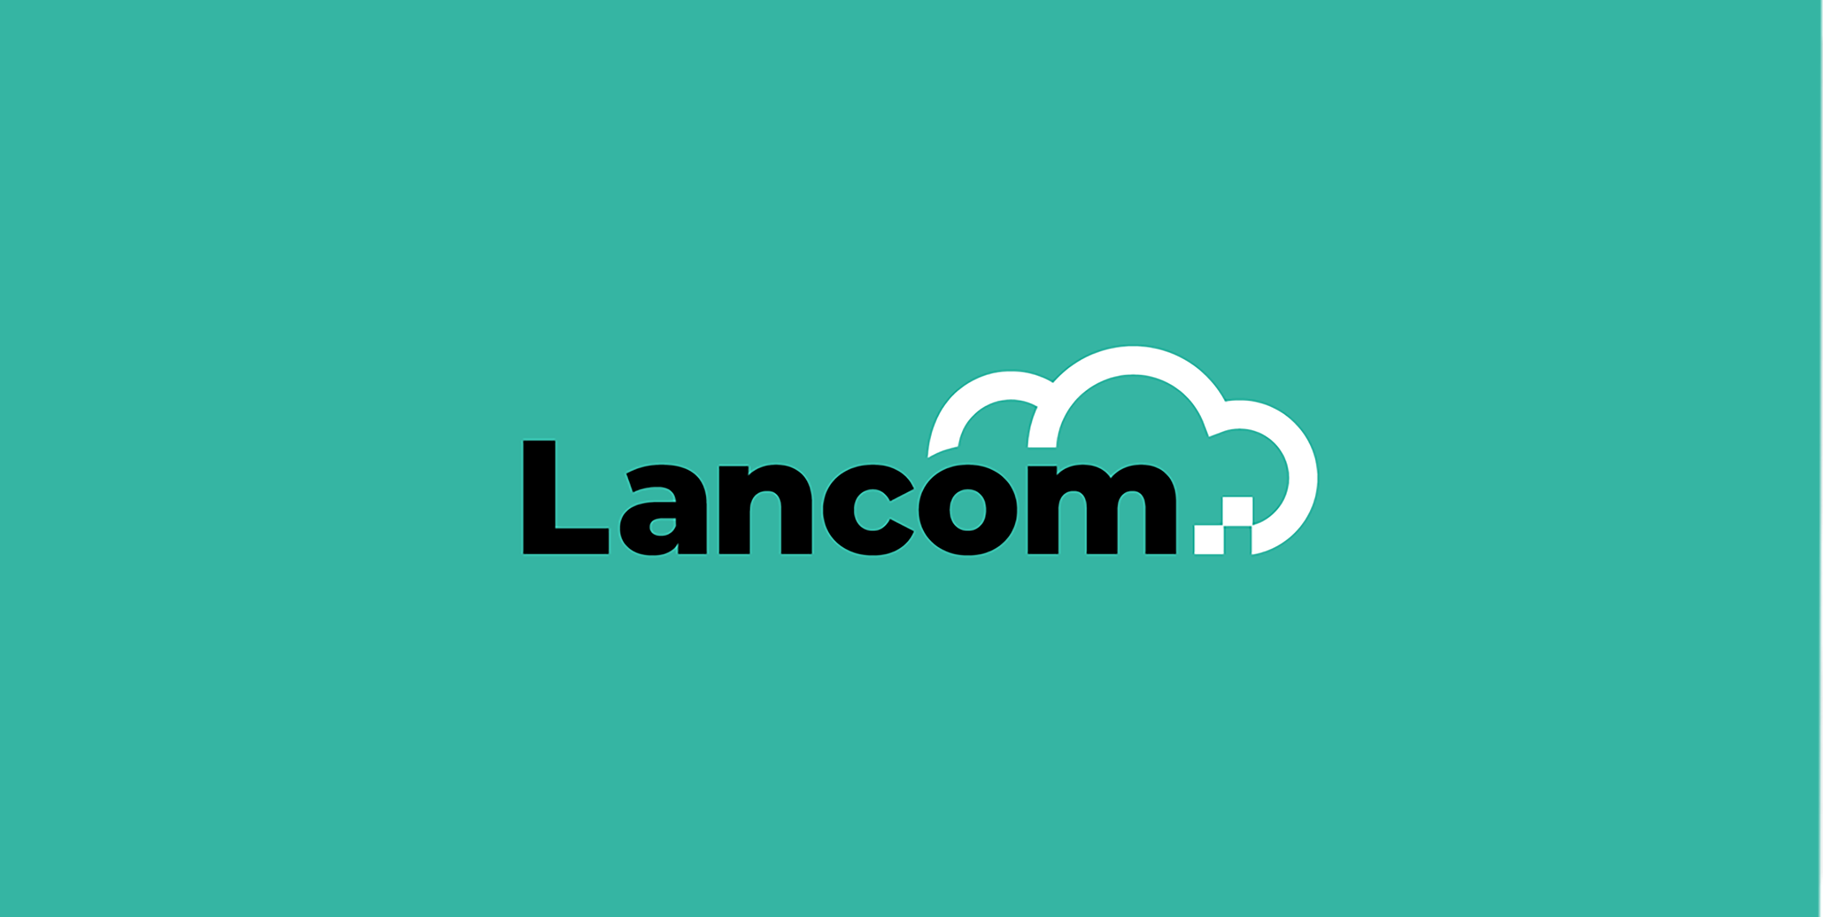 Lancom Technology